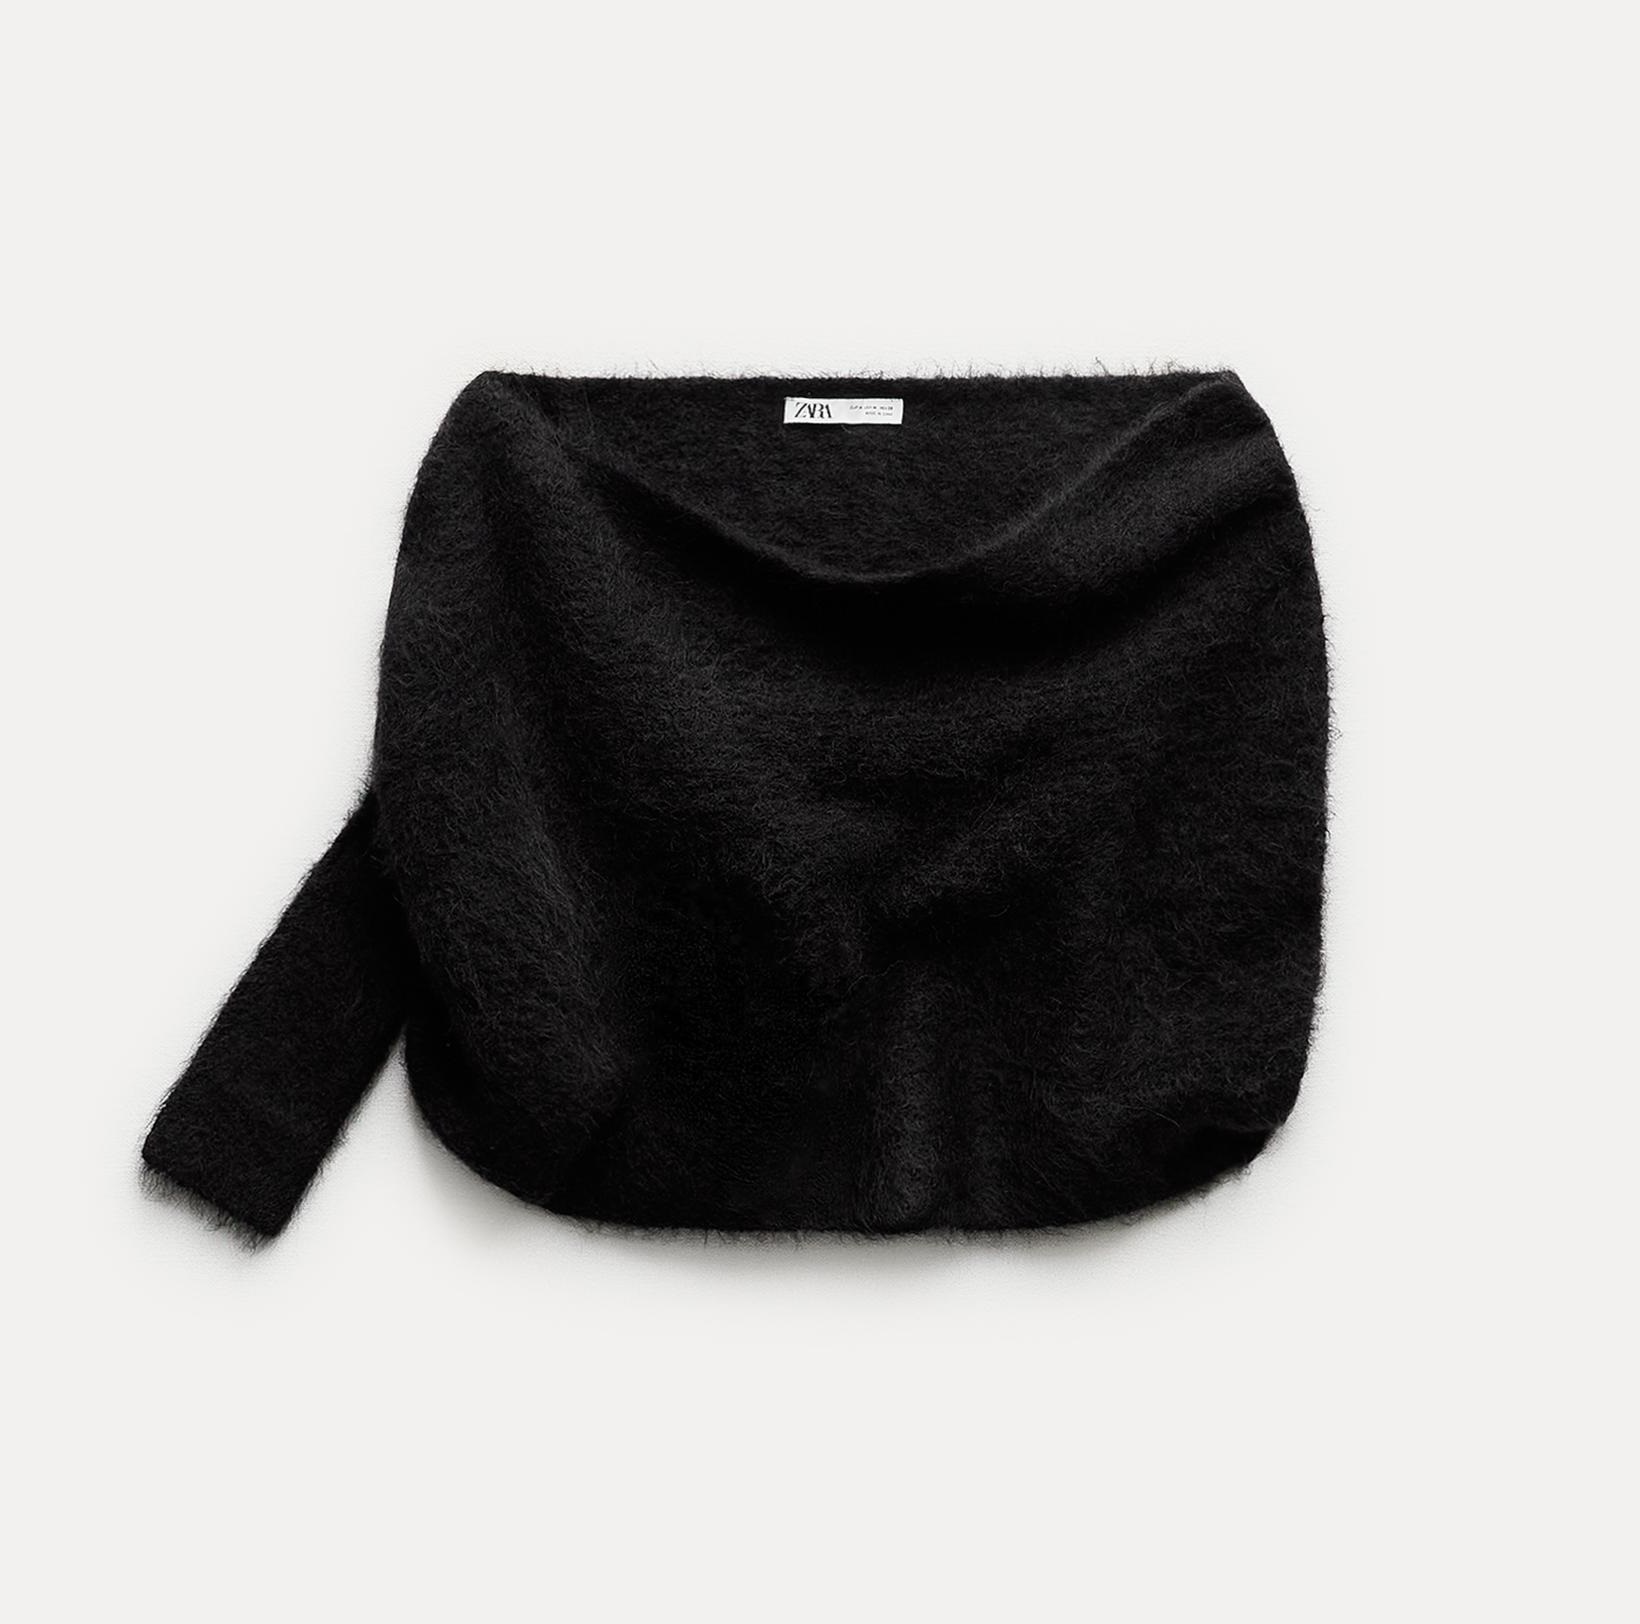 Джемпер Zara Alpaca Blend Asymmetric Knit Bolero Cape, черный накидка болеро яркая 44 48 размер